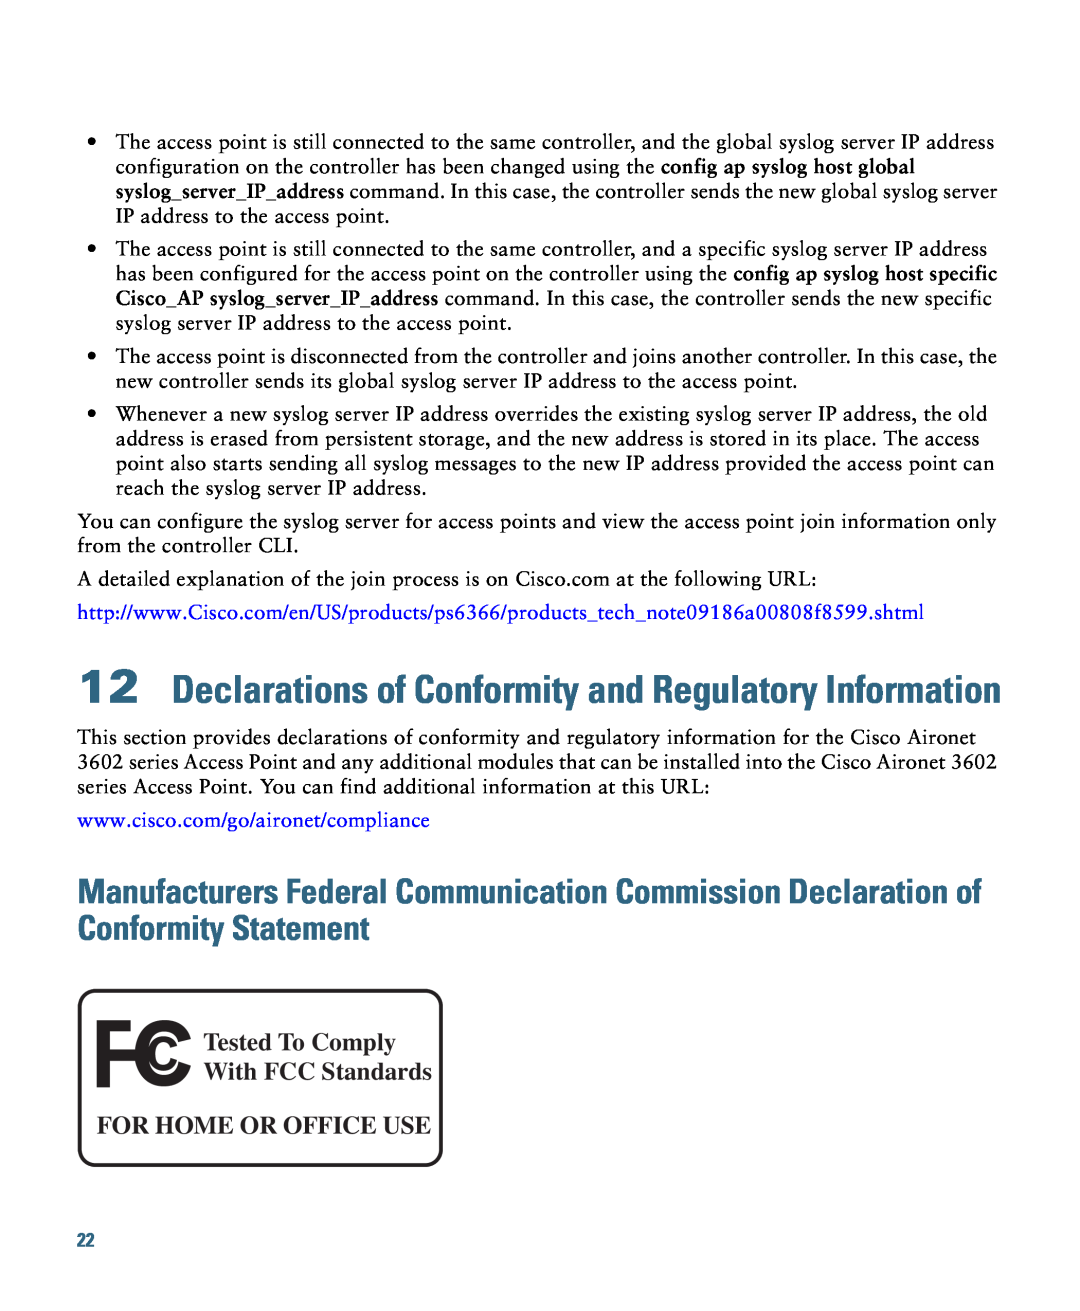 Cisco Systems AIRCAP3602EAK9, AIRCAP3602ITK9, AIRCAP3602IAK9RF Declarations of Conformity and Regulatory Information 